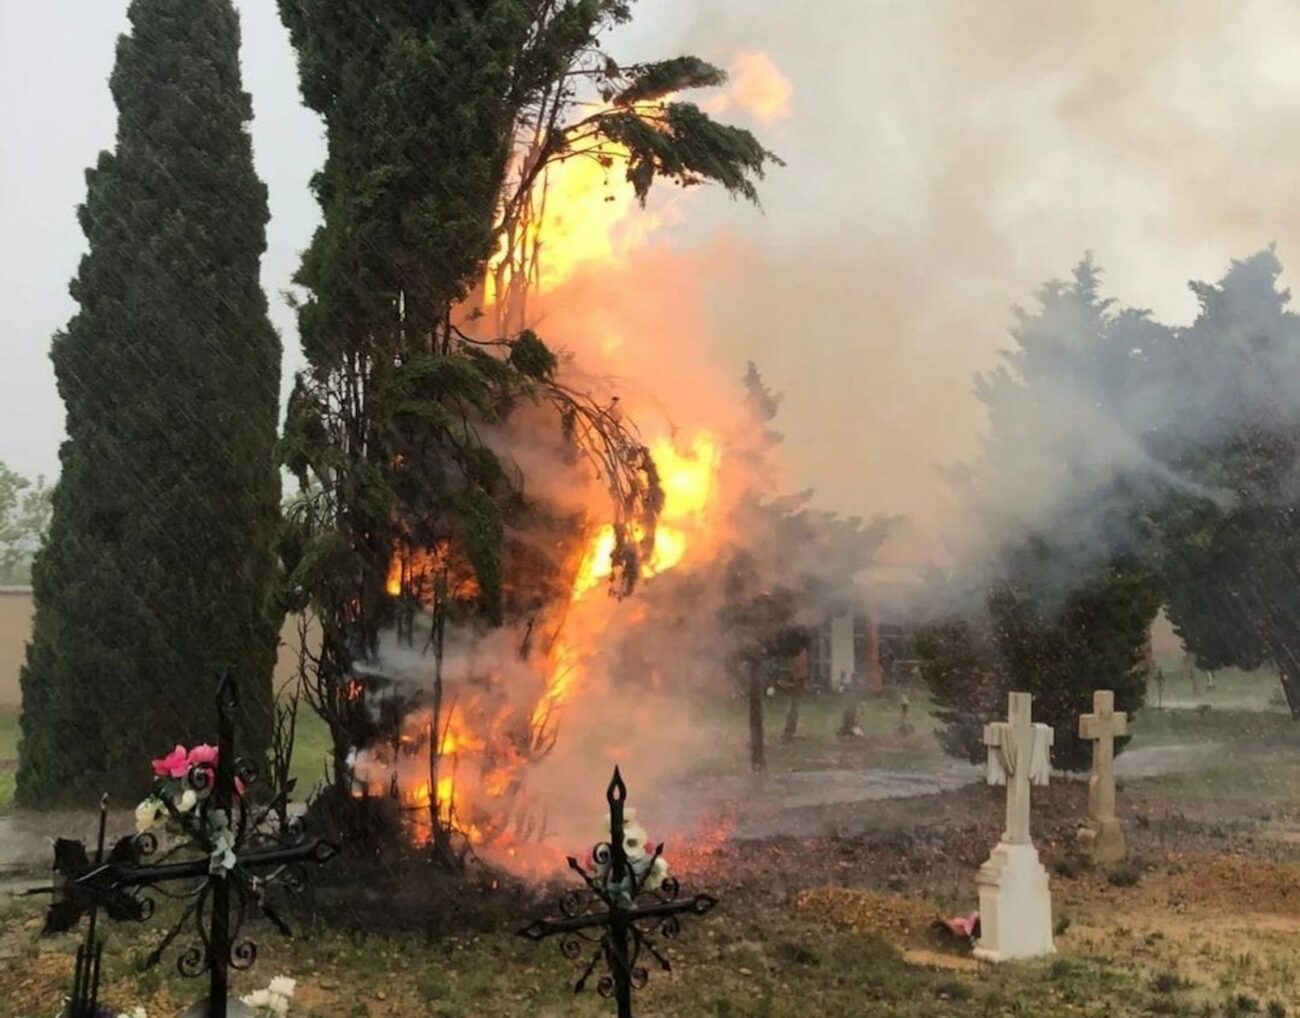 Esquelas.es | La cada de un rayo durante una tormenta produjo un incendio en el cementerio de Aguaviva